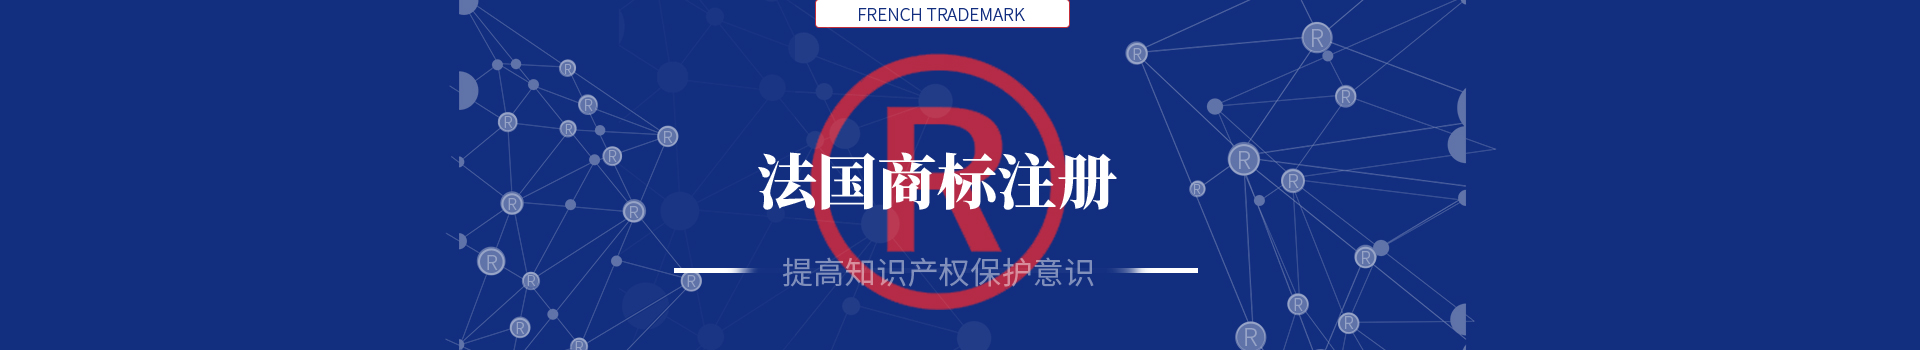 法国商标注册